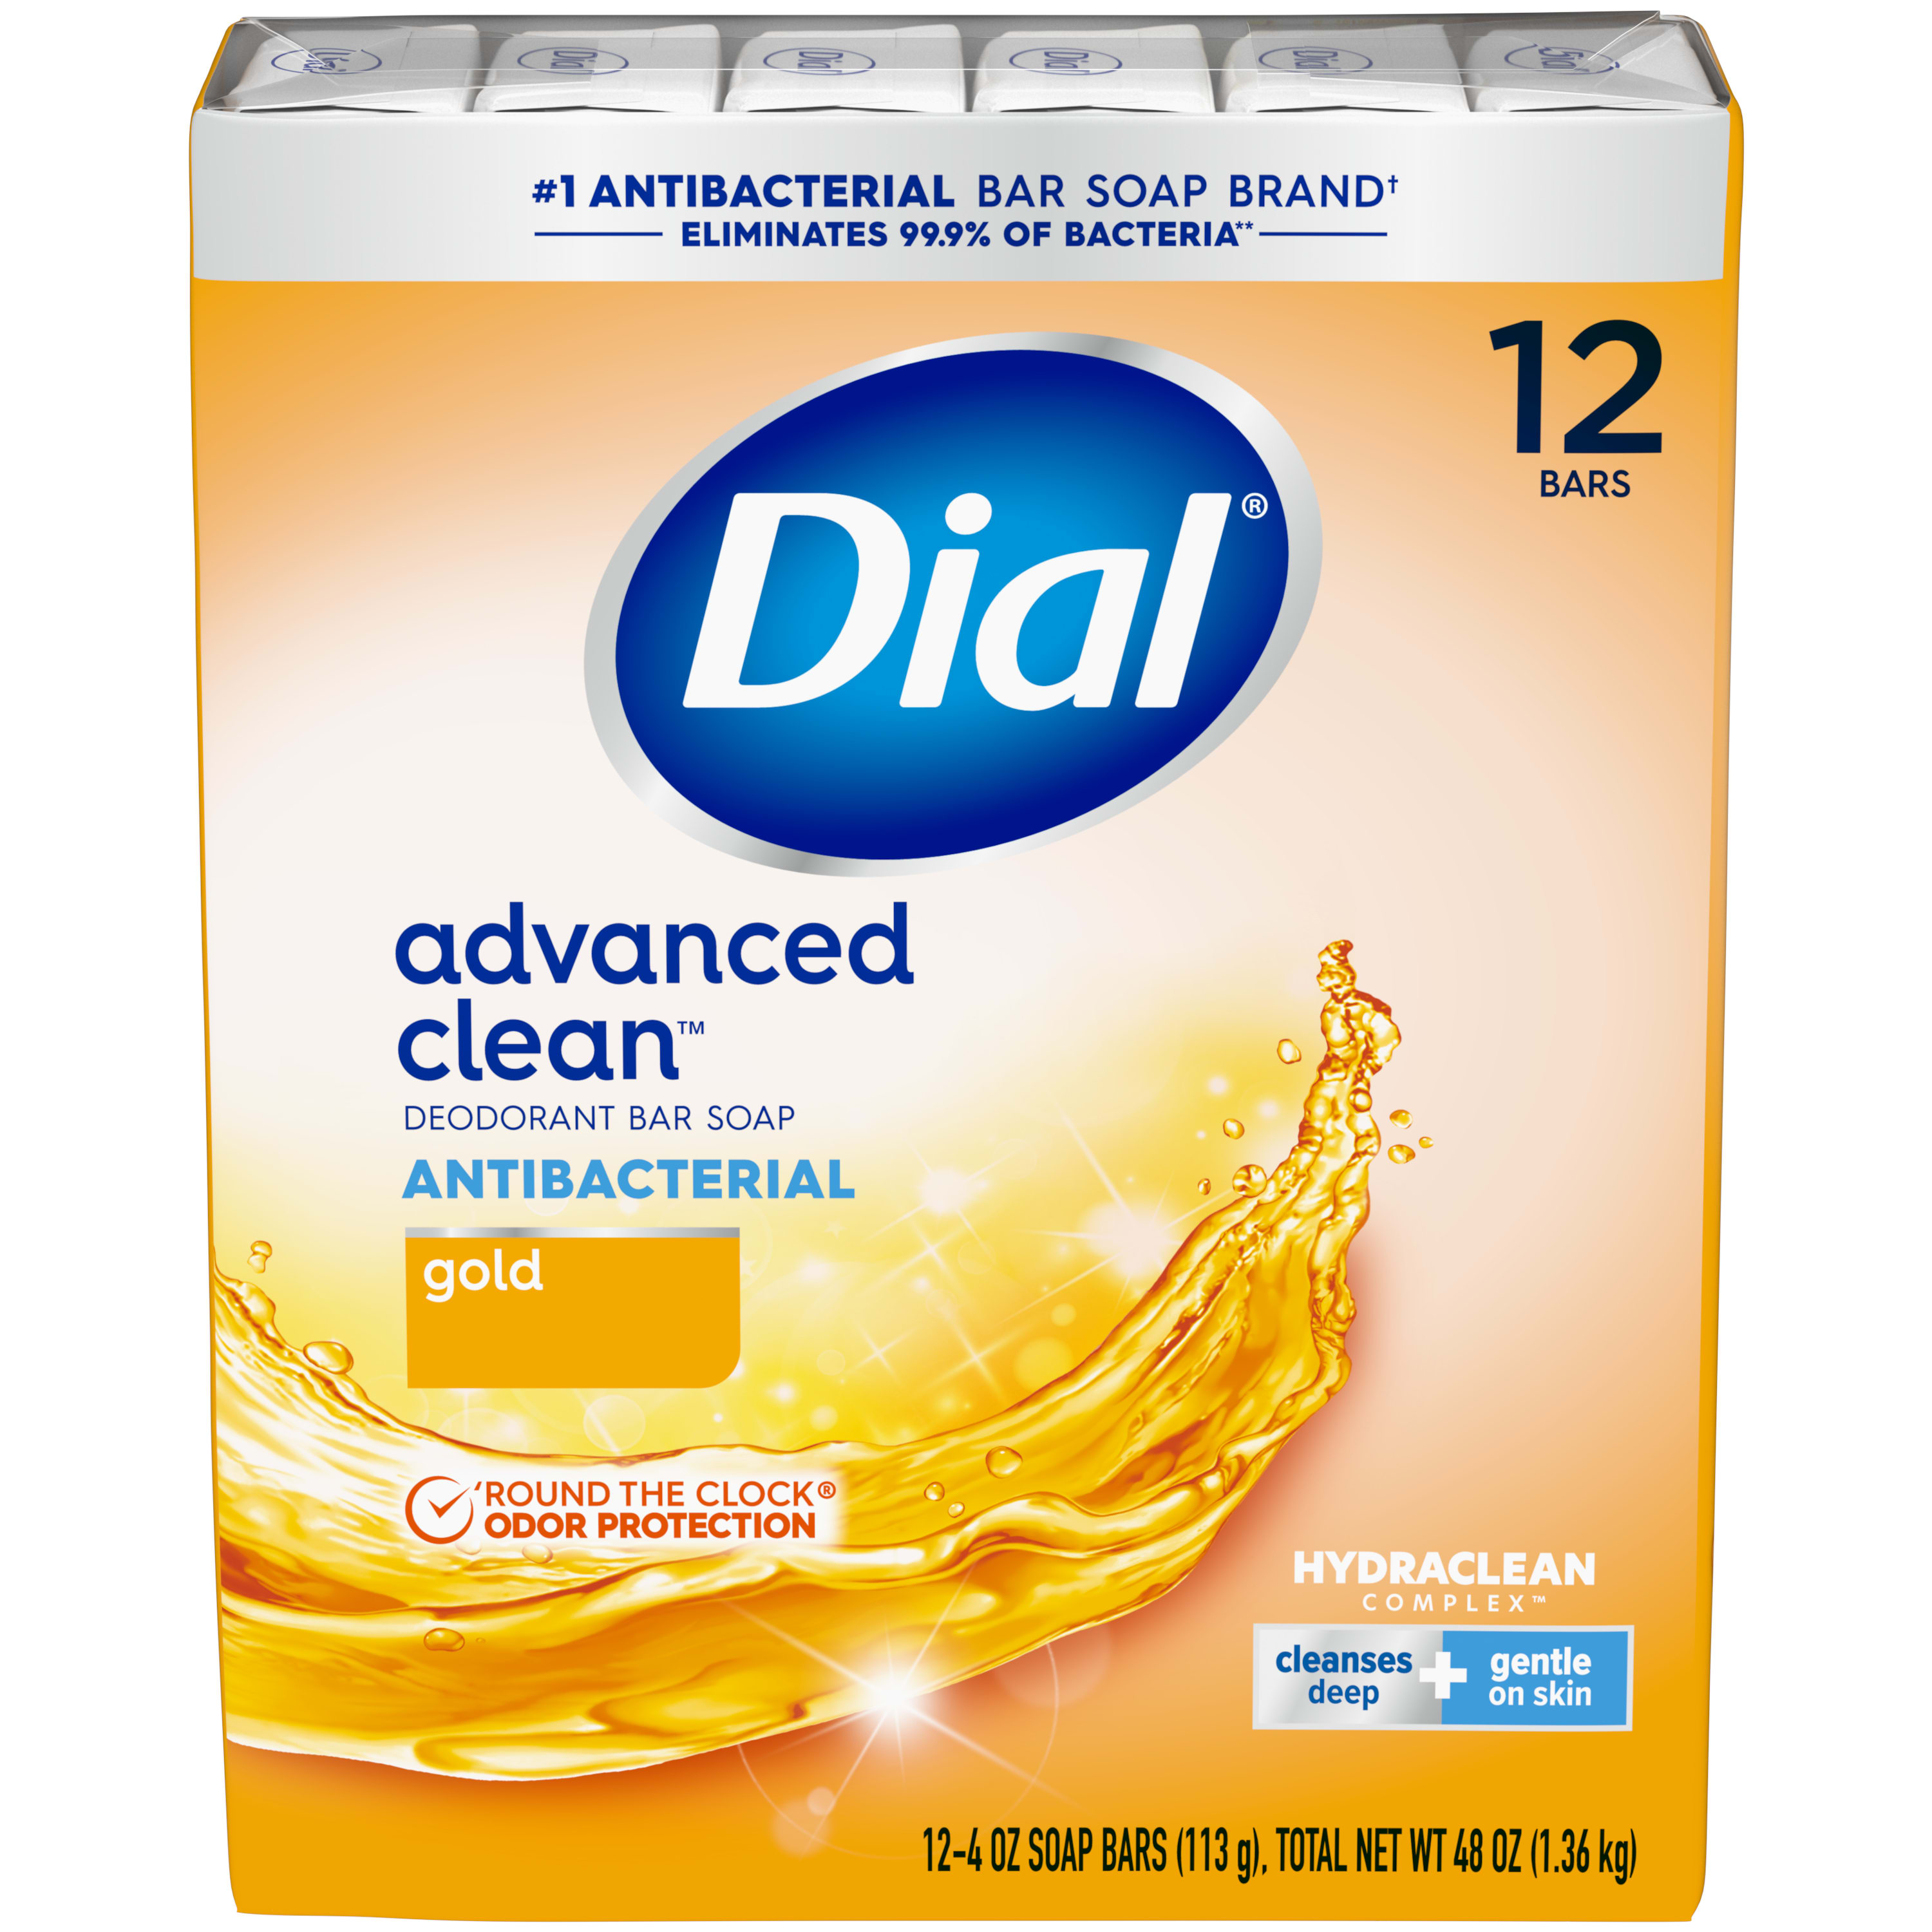 Dial Antibacterial Deodorant Bar Soap, Advanced Clean, Gold, 4 oz, 12 Bars - image 1 of 10